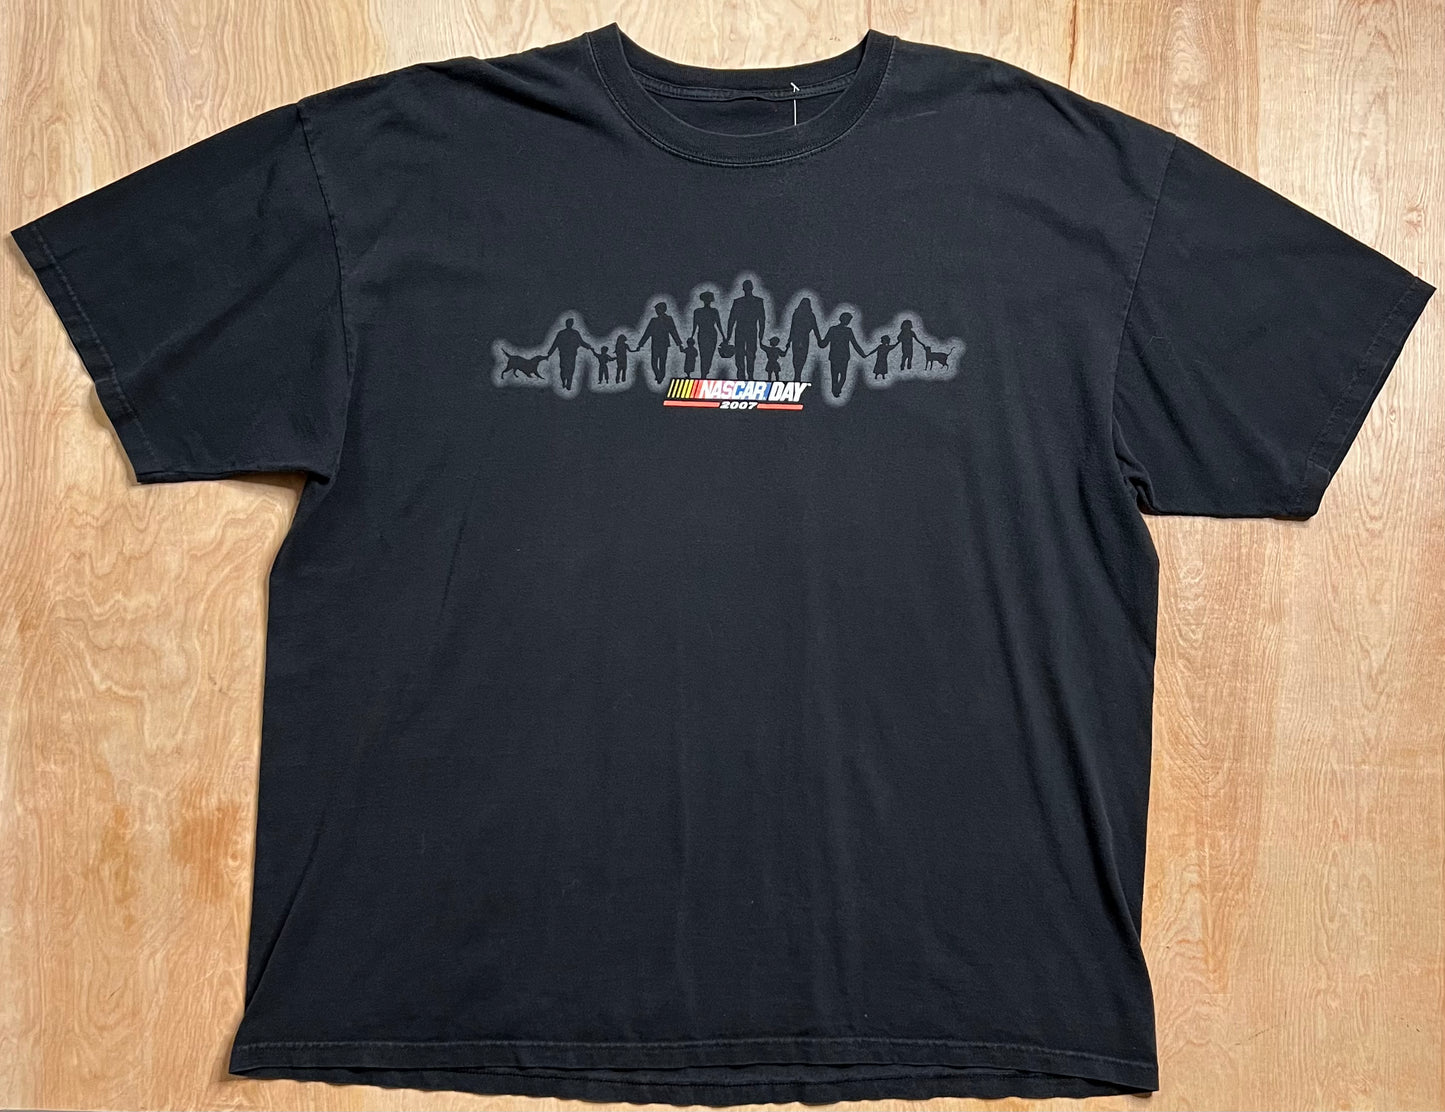 2007 Nascar Day T-Shirt